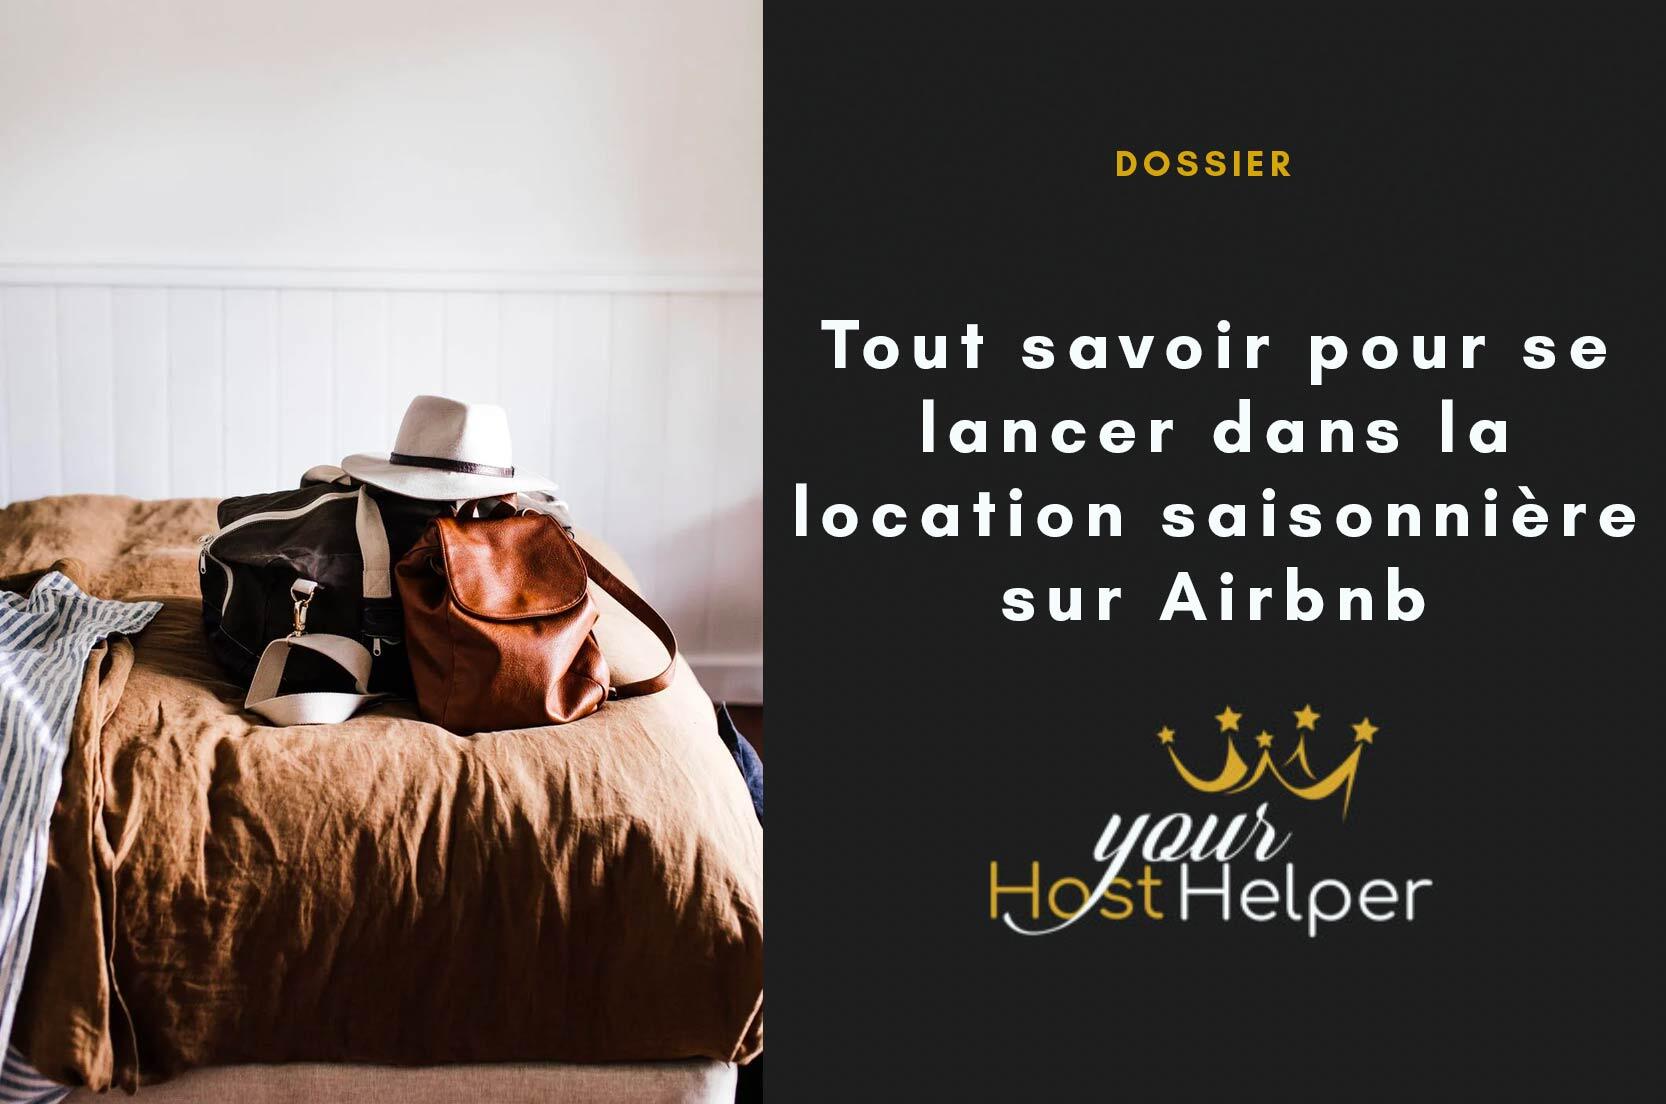 You are currently viewing Dossier : Tout savoir pour se lancer dans la location saisonnière sur Airbnb